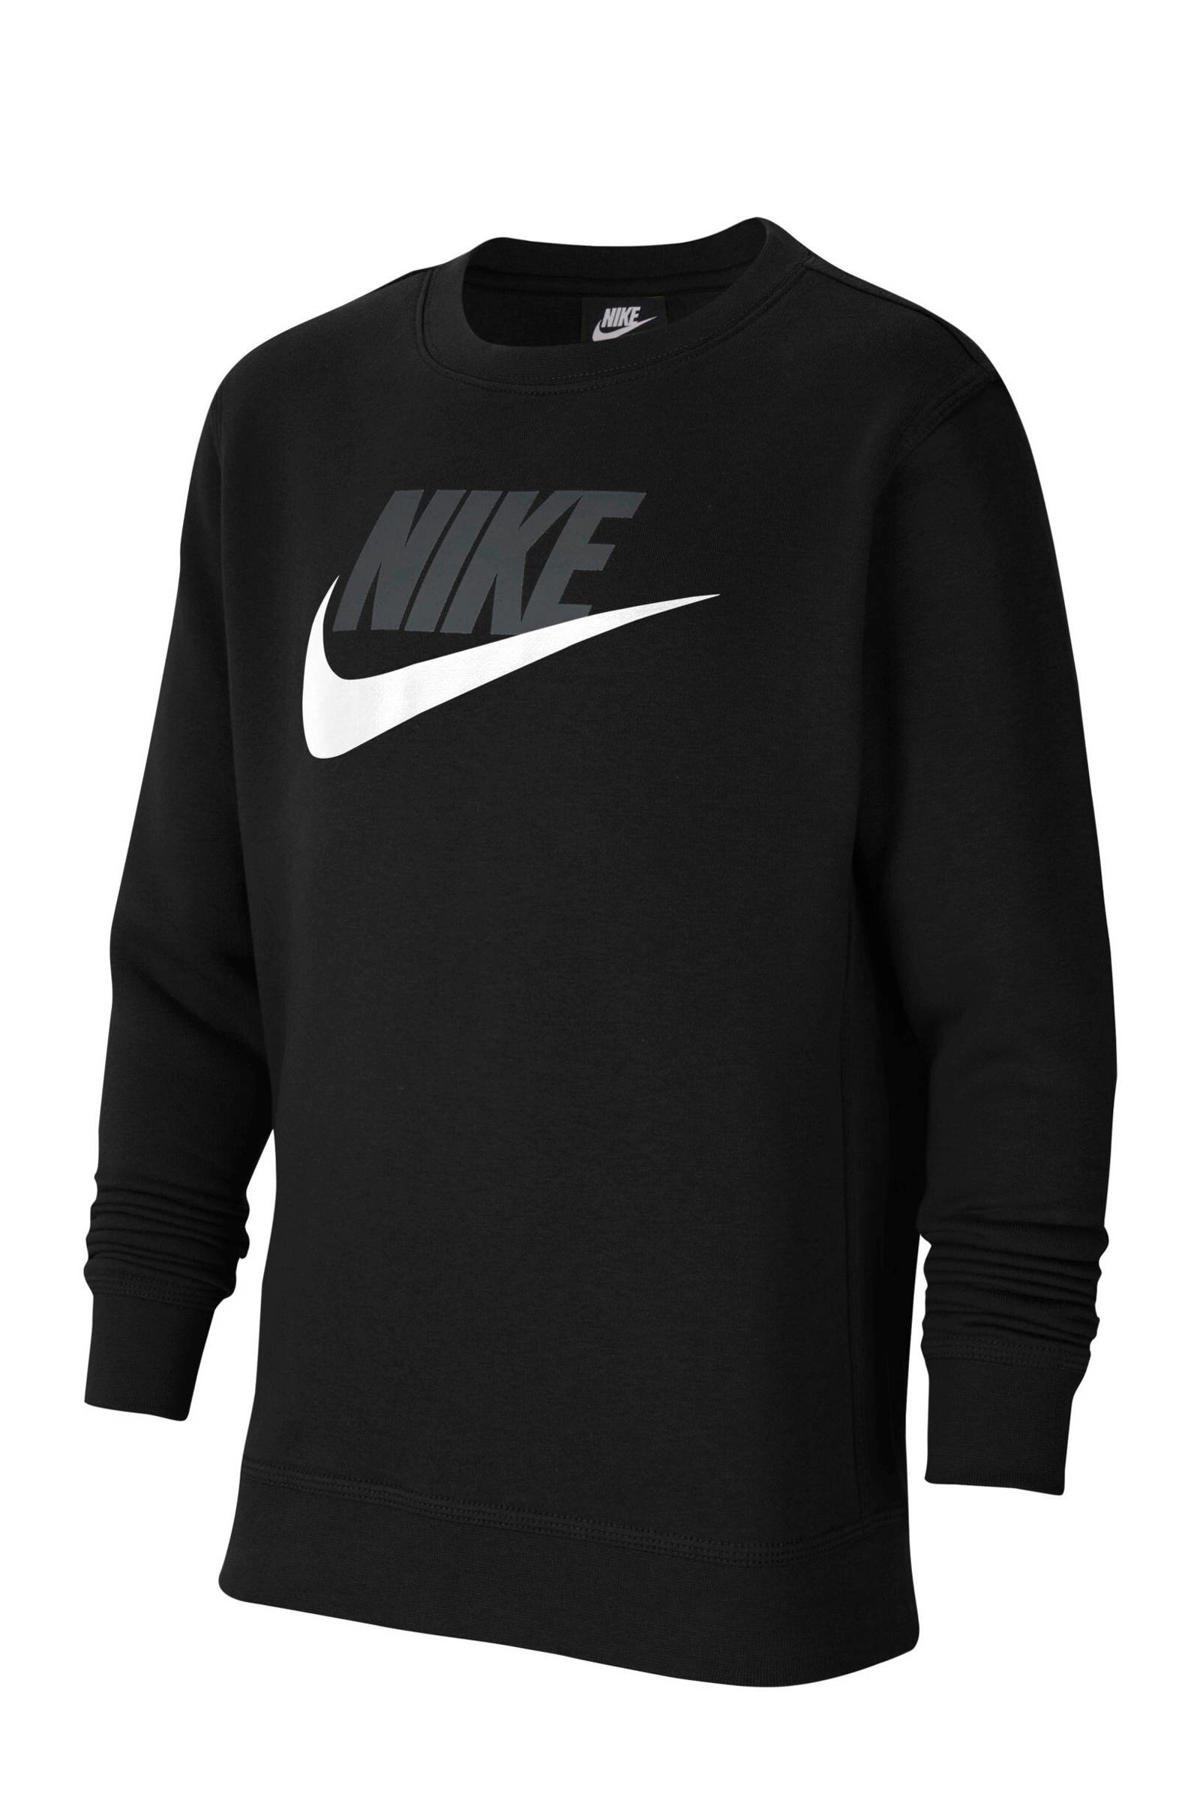 Geld rubber verzending toevoegen Nike sweater zwart | wehkamp